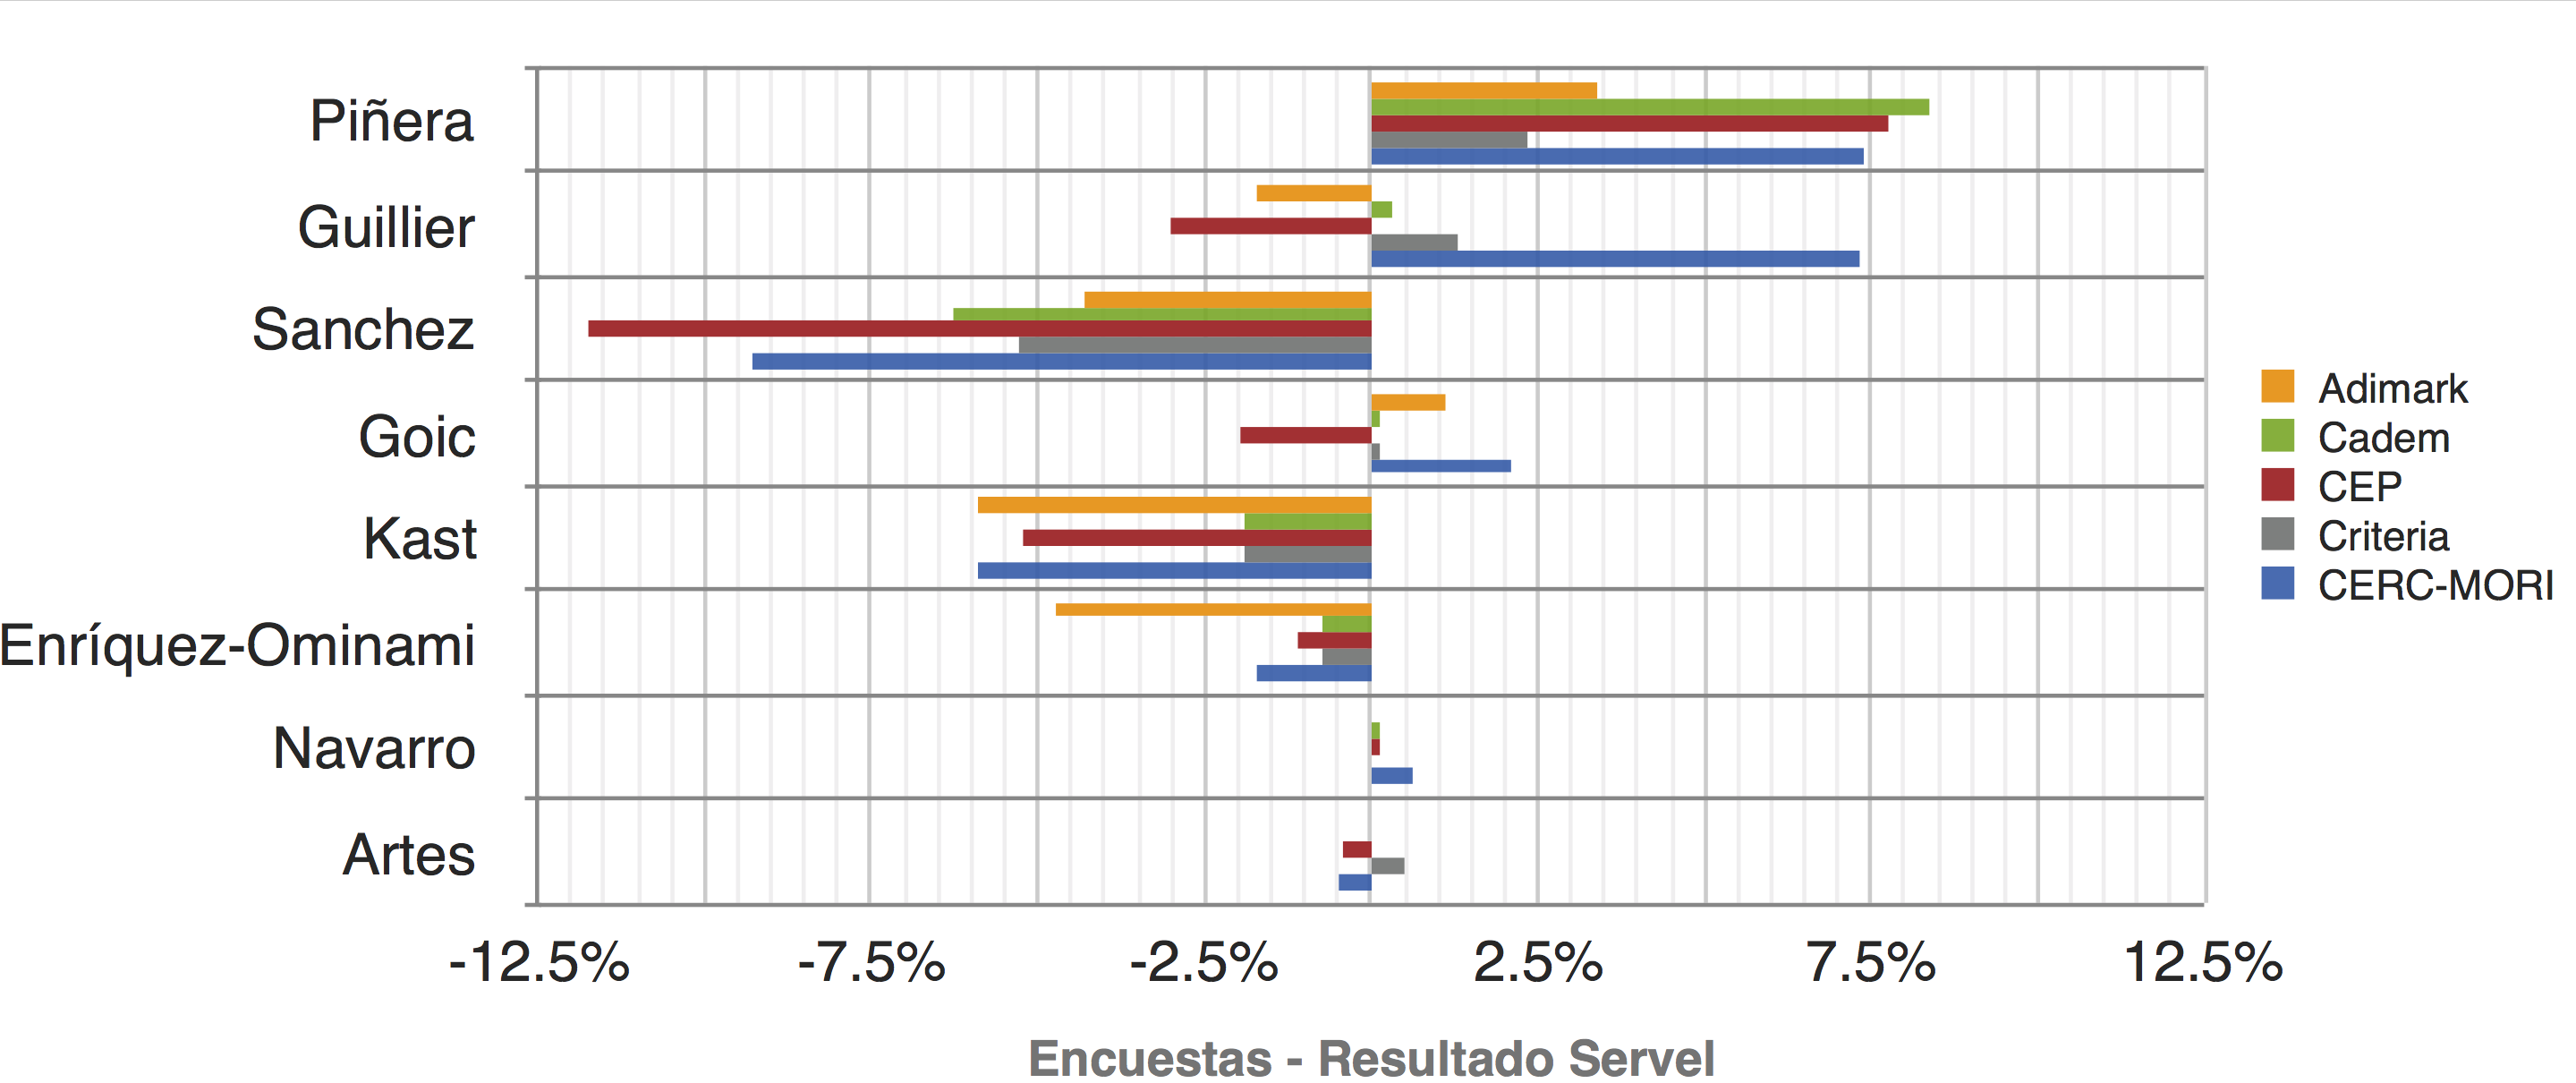 Comparación entre encuestas y resultados Servel Elecciones Presidenciales Chile 2017